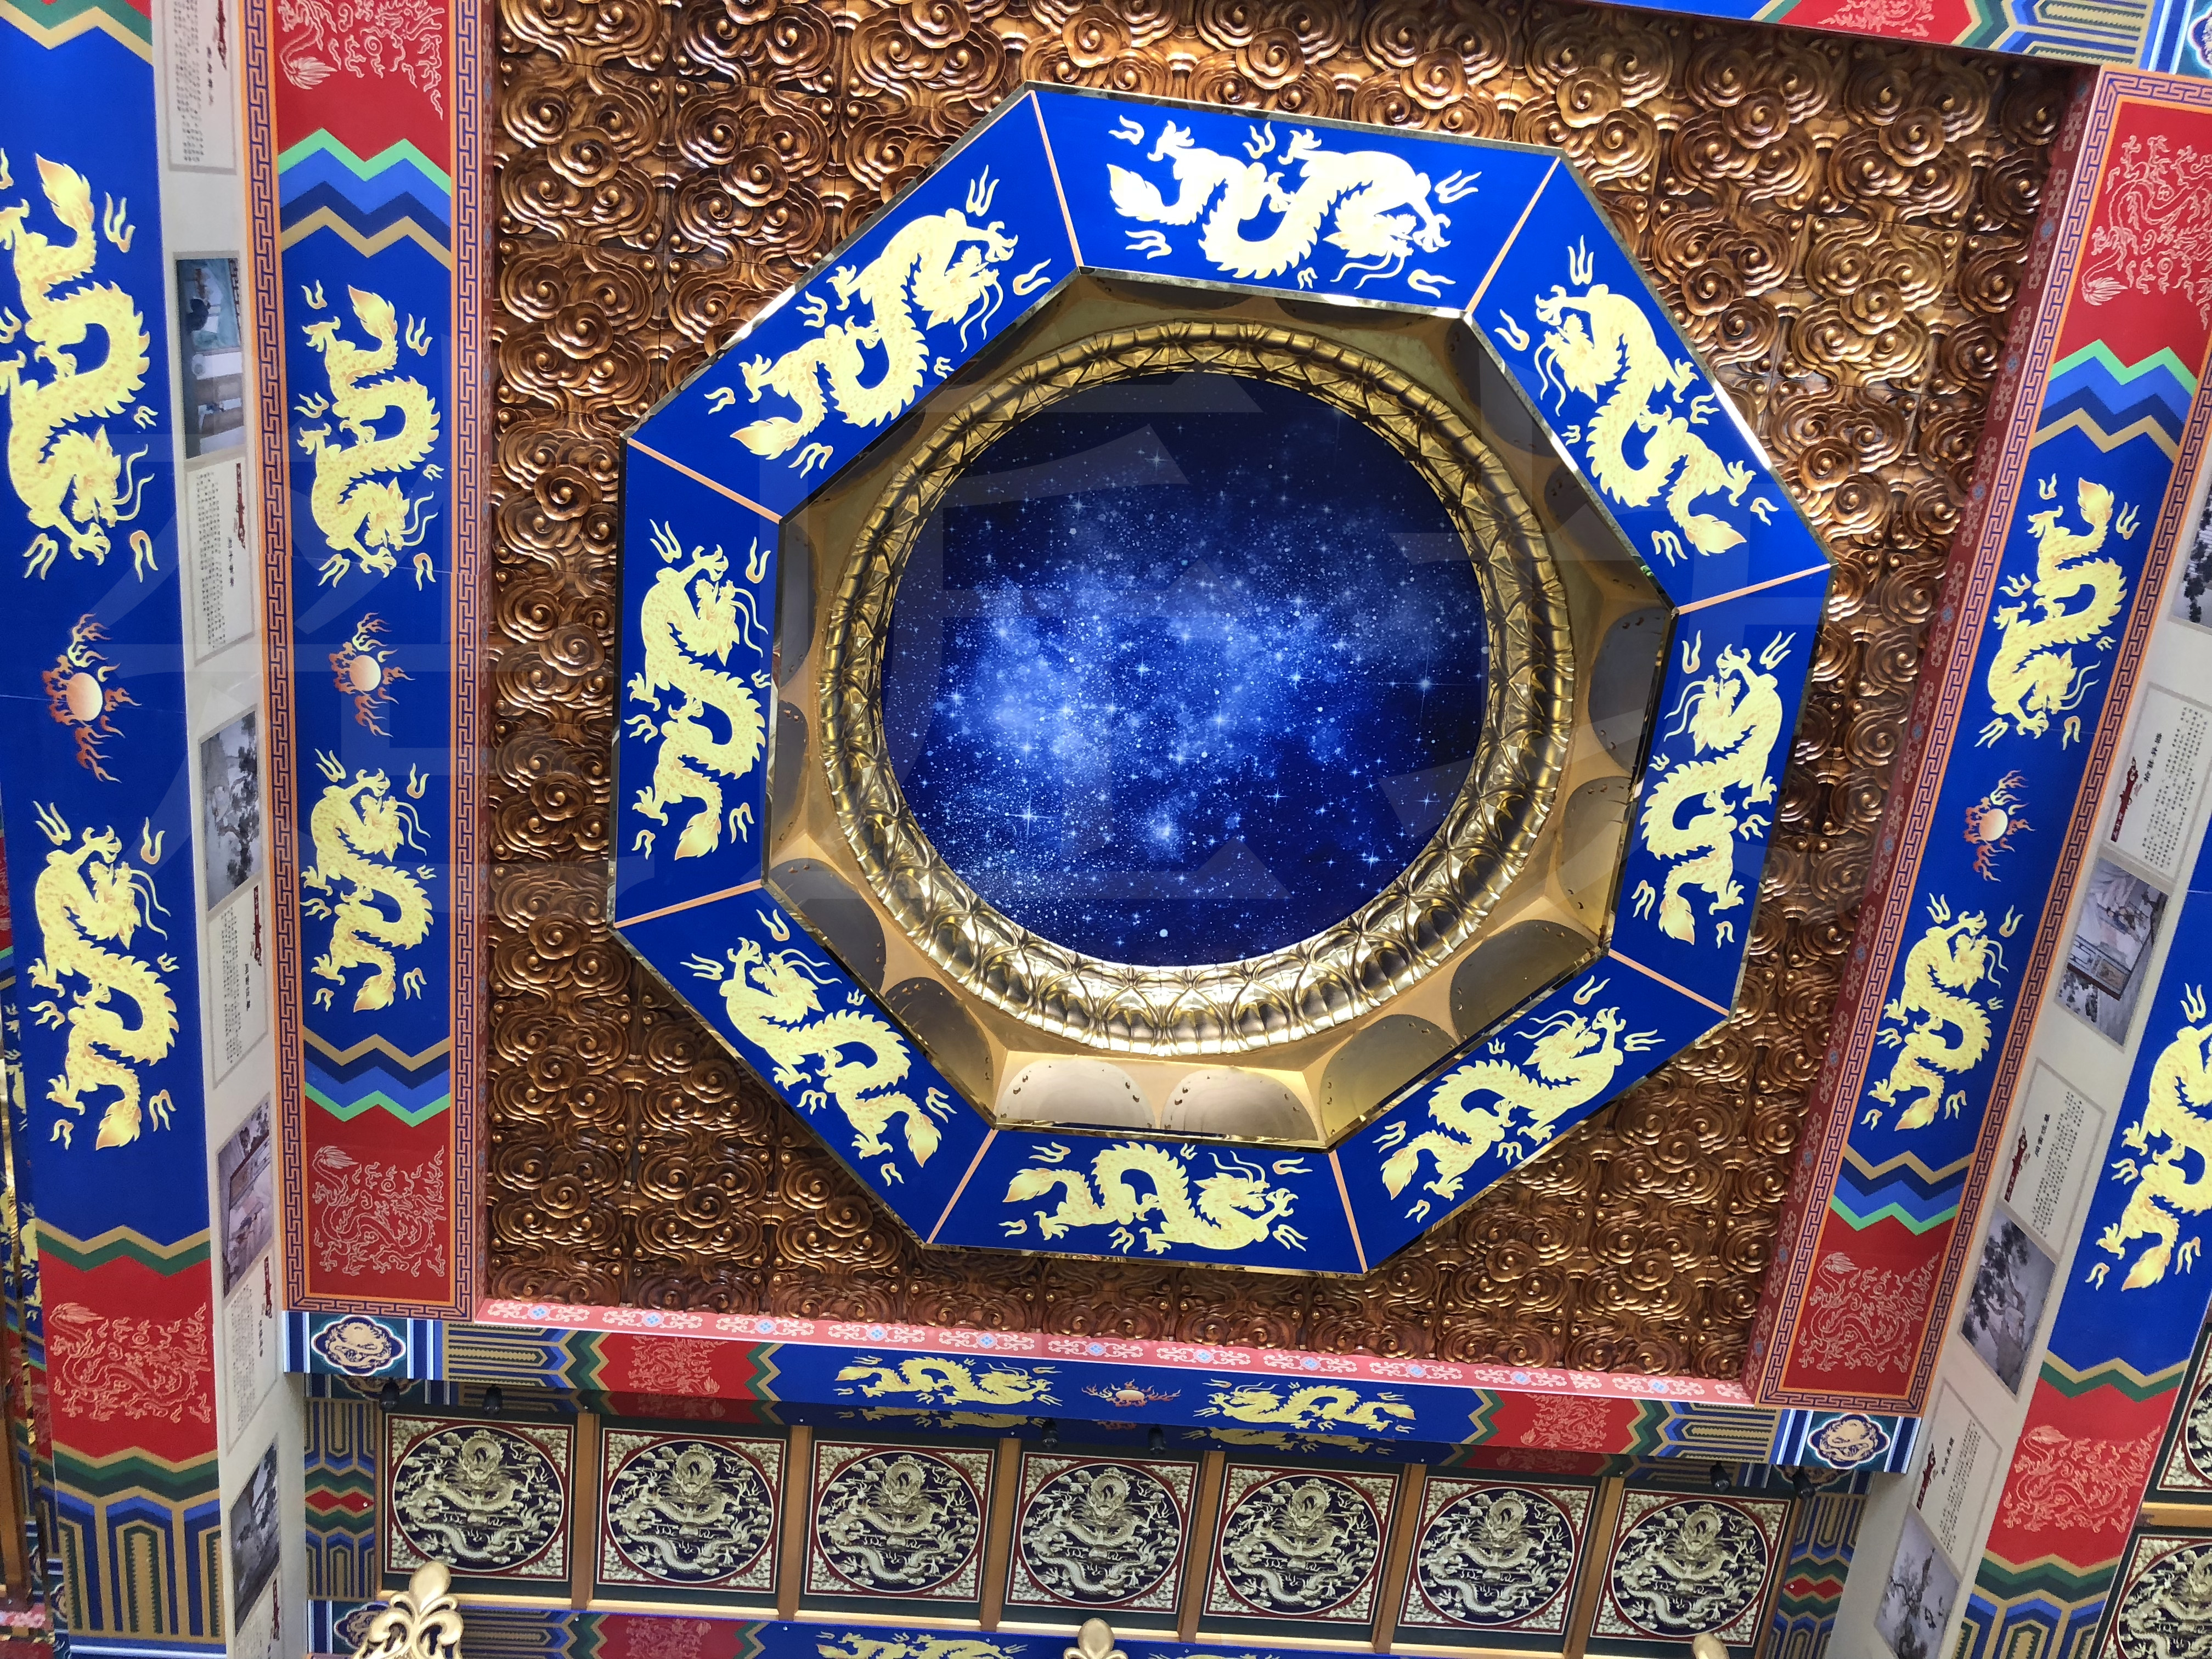 在我国传统建筑中藻井是天花板上的其中一种装饰,它包含有五行